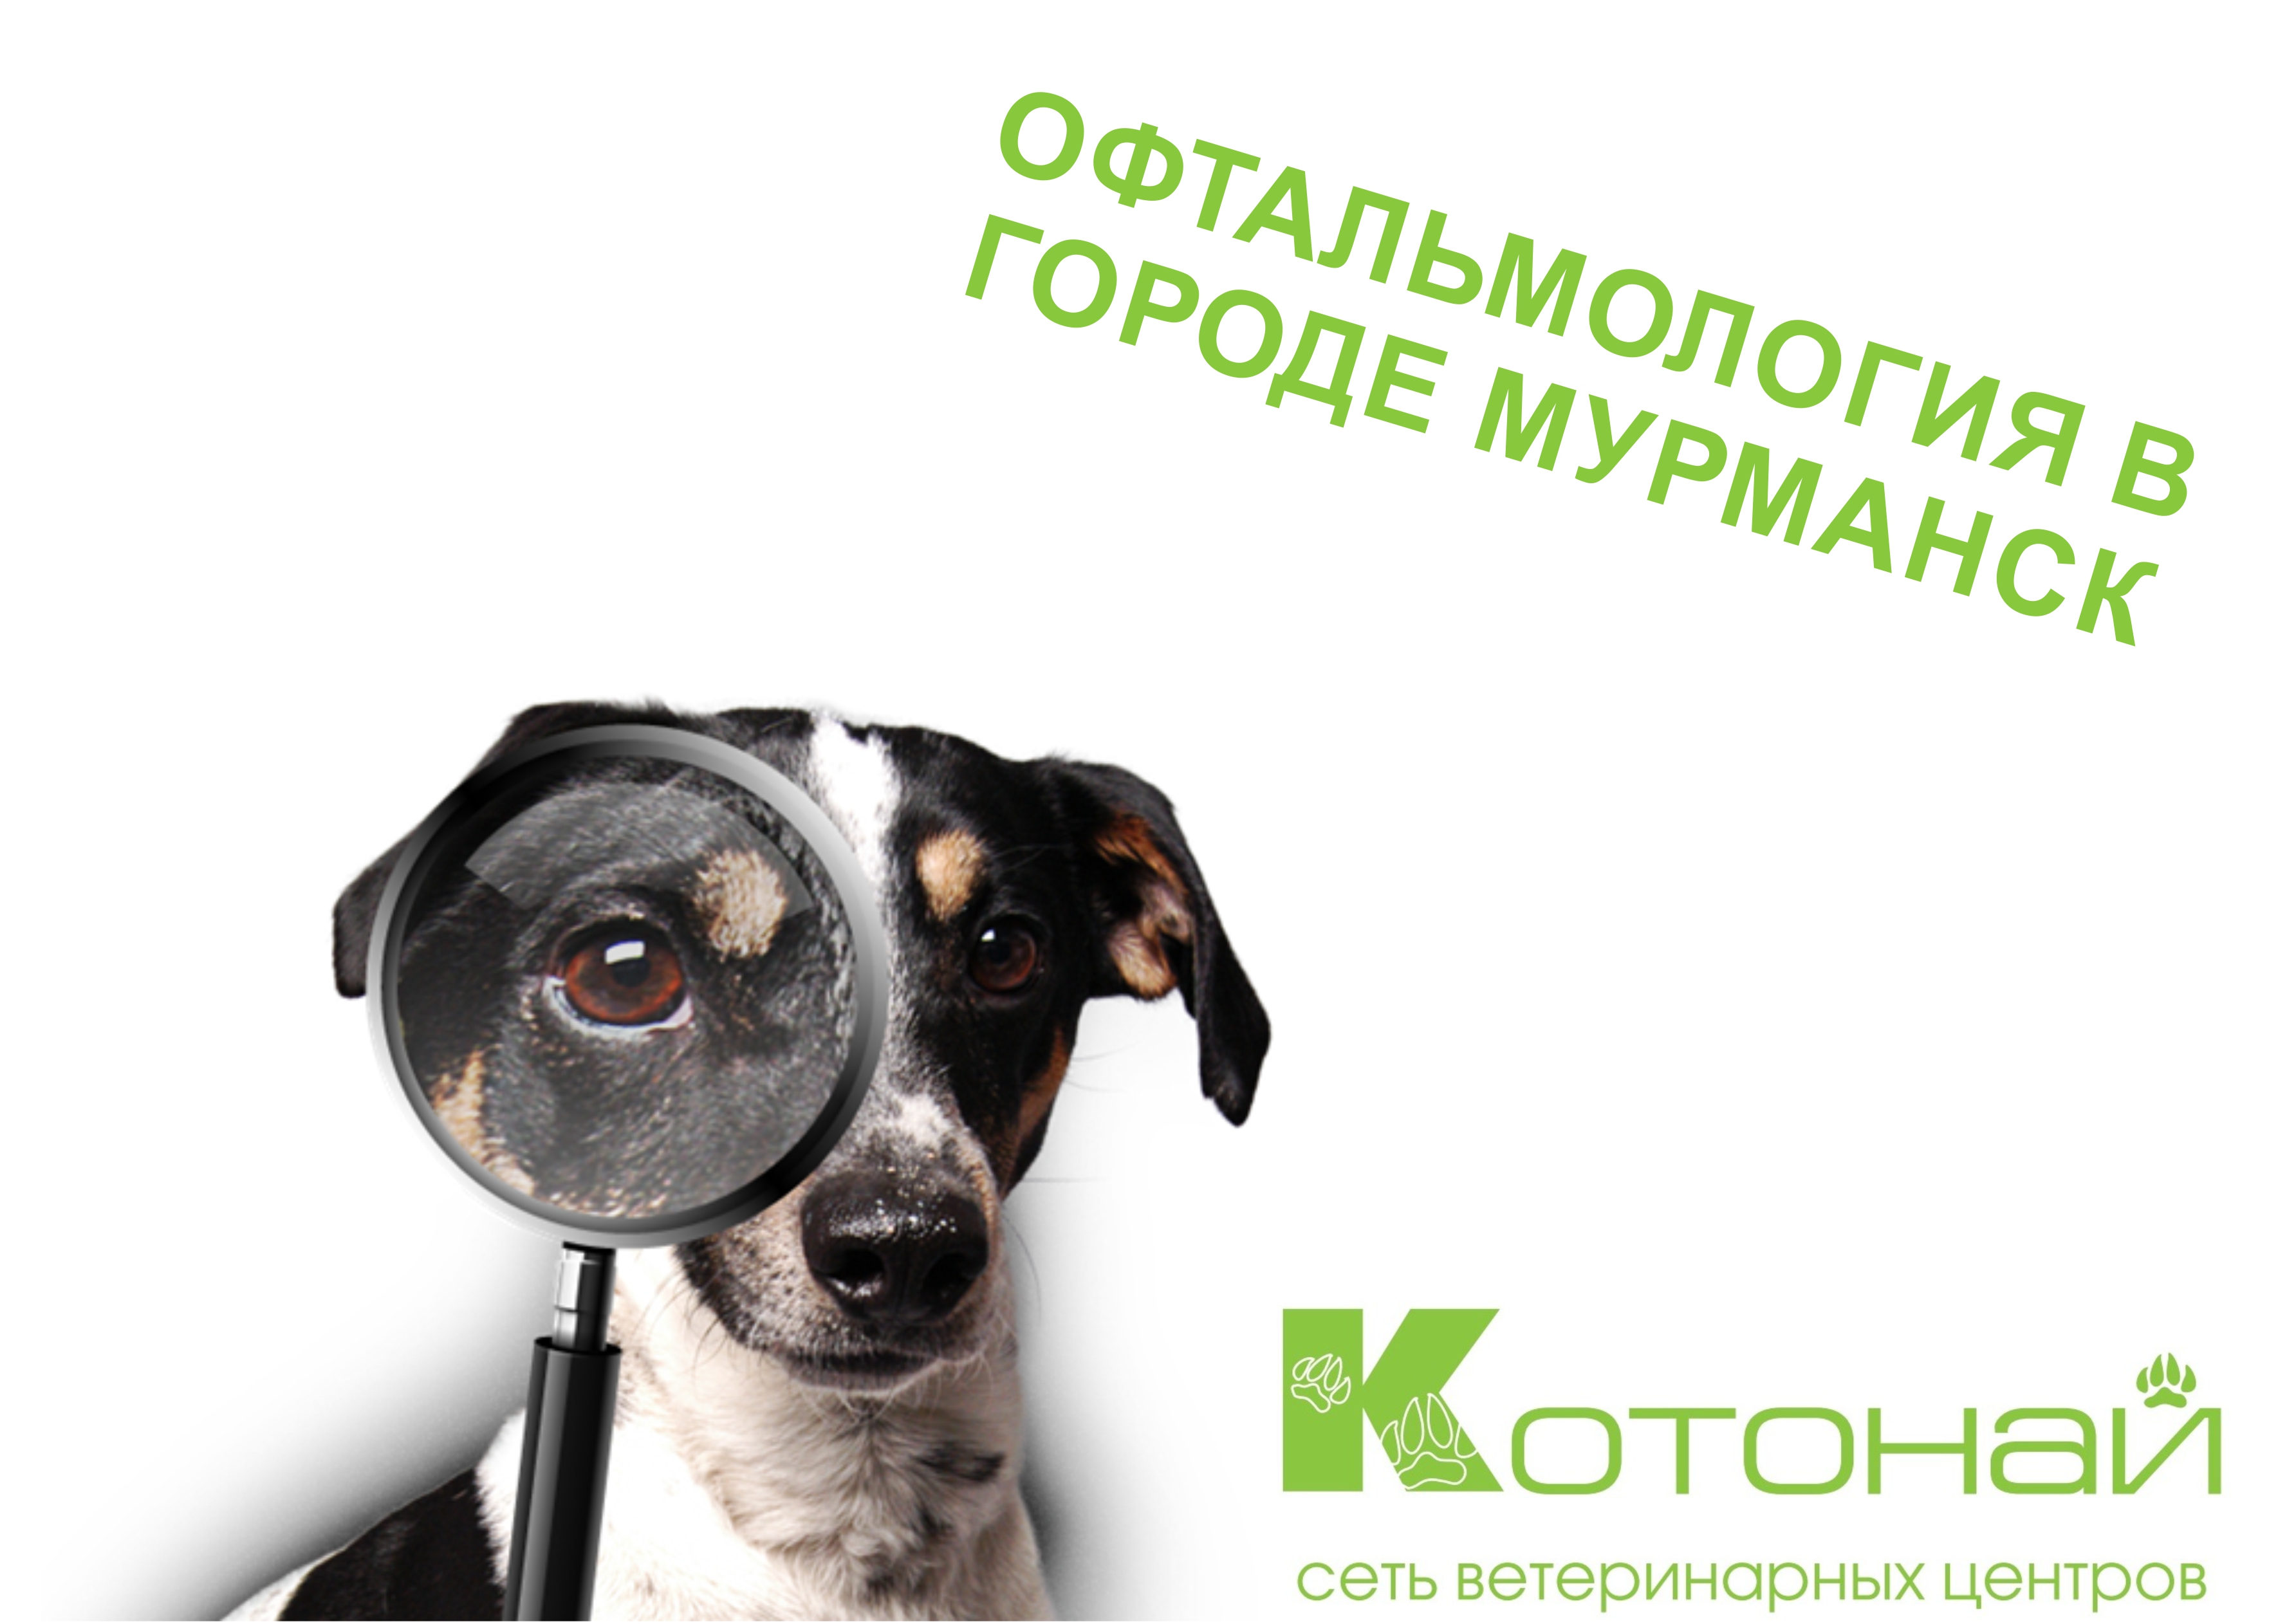 Ветеринарная офтальмология в городе Мурманск!